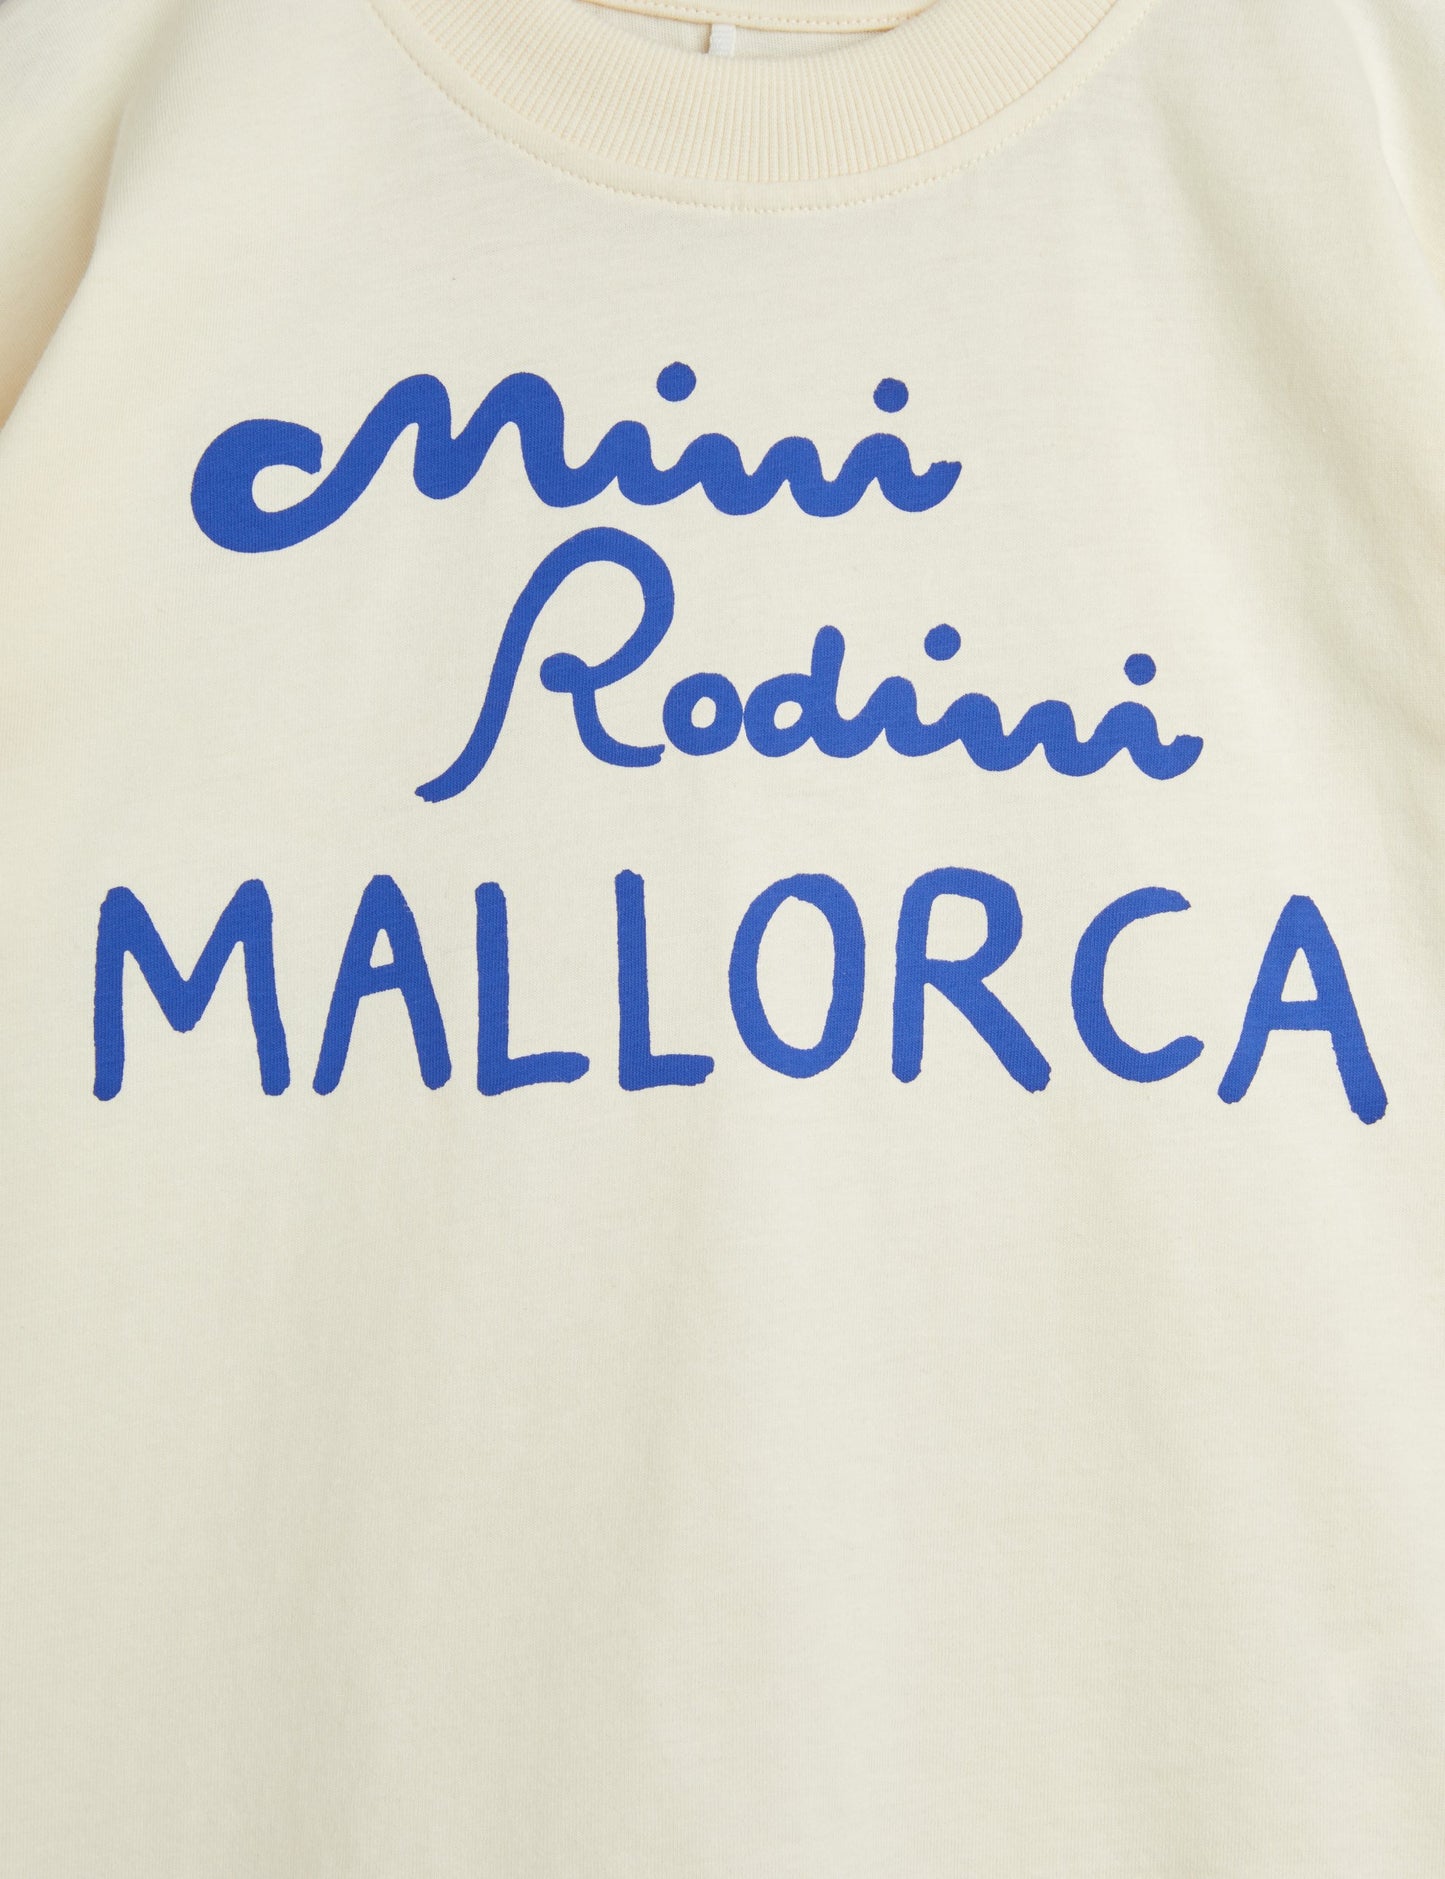 Mallorca T-Shirt